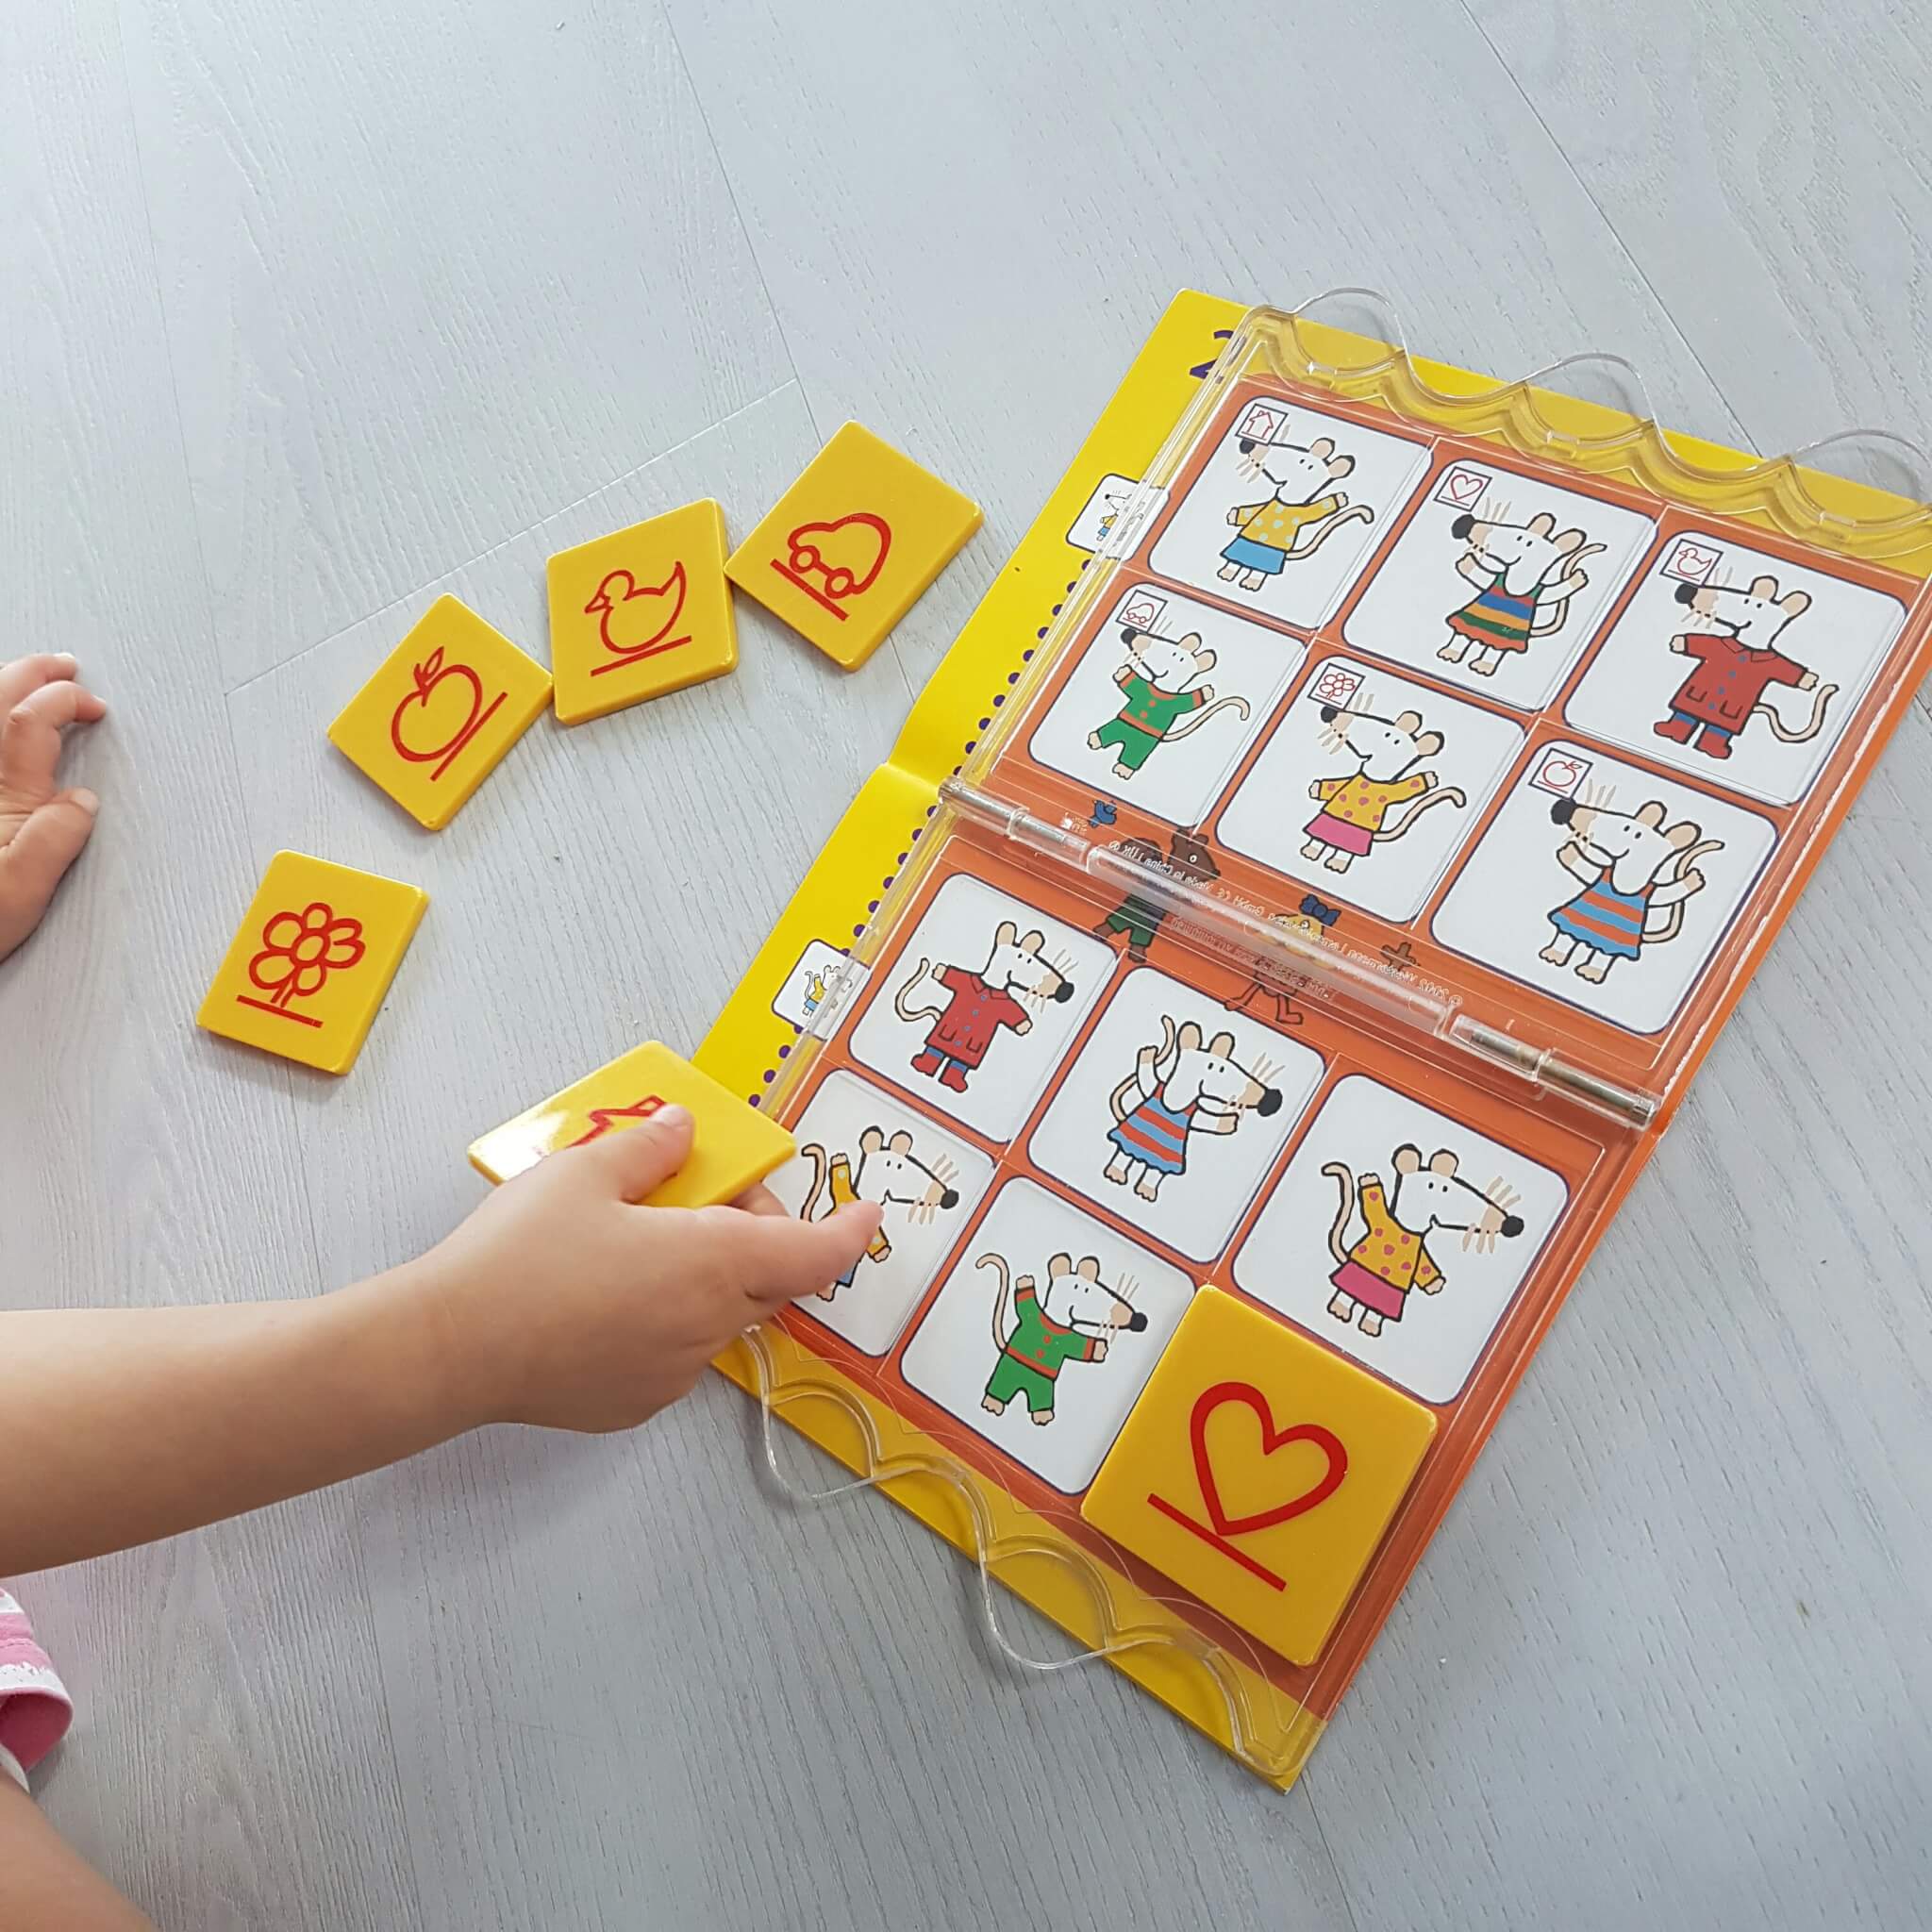 De leukste (bord)spelletjes voor peuters, kleuters, kinderen Leuk met kids